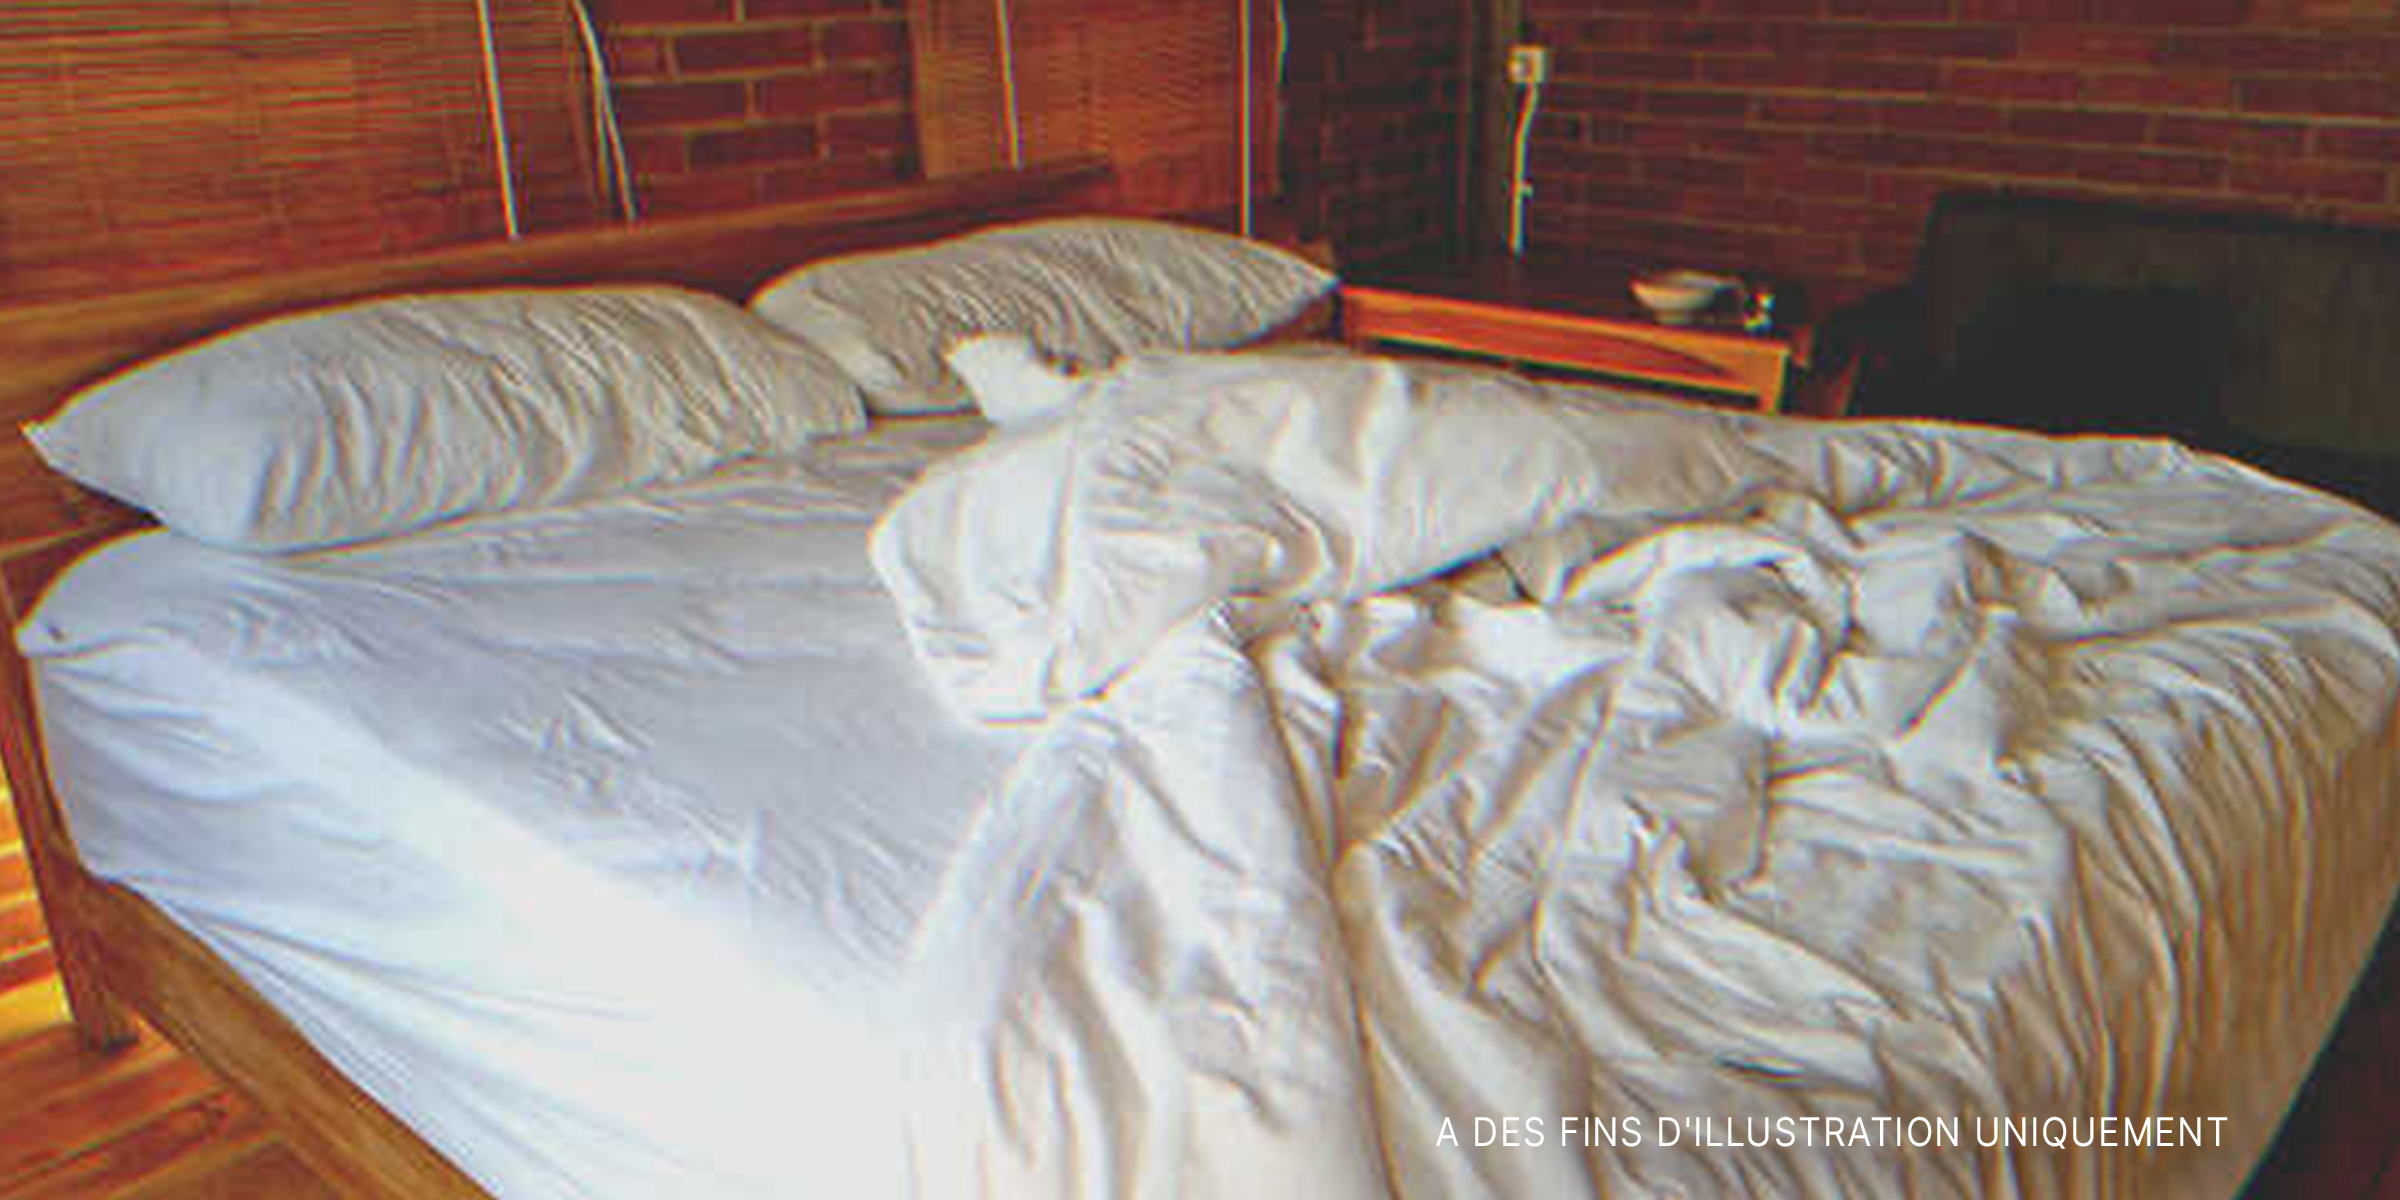 Un lit vide et défait. | Source : Shutterstock